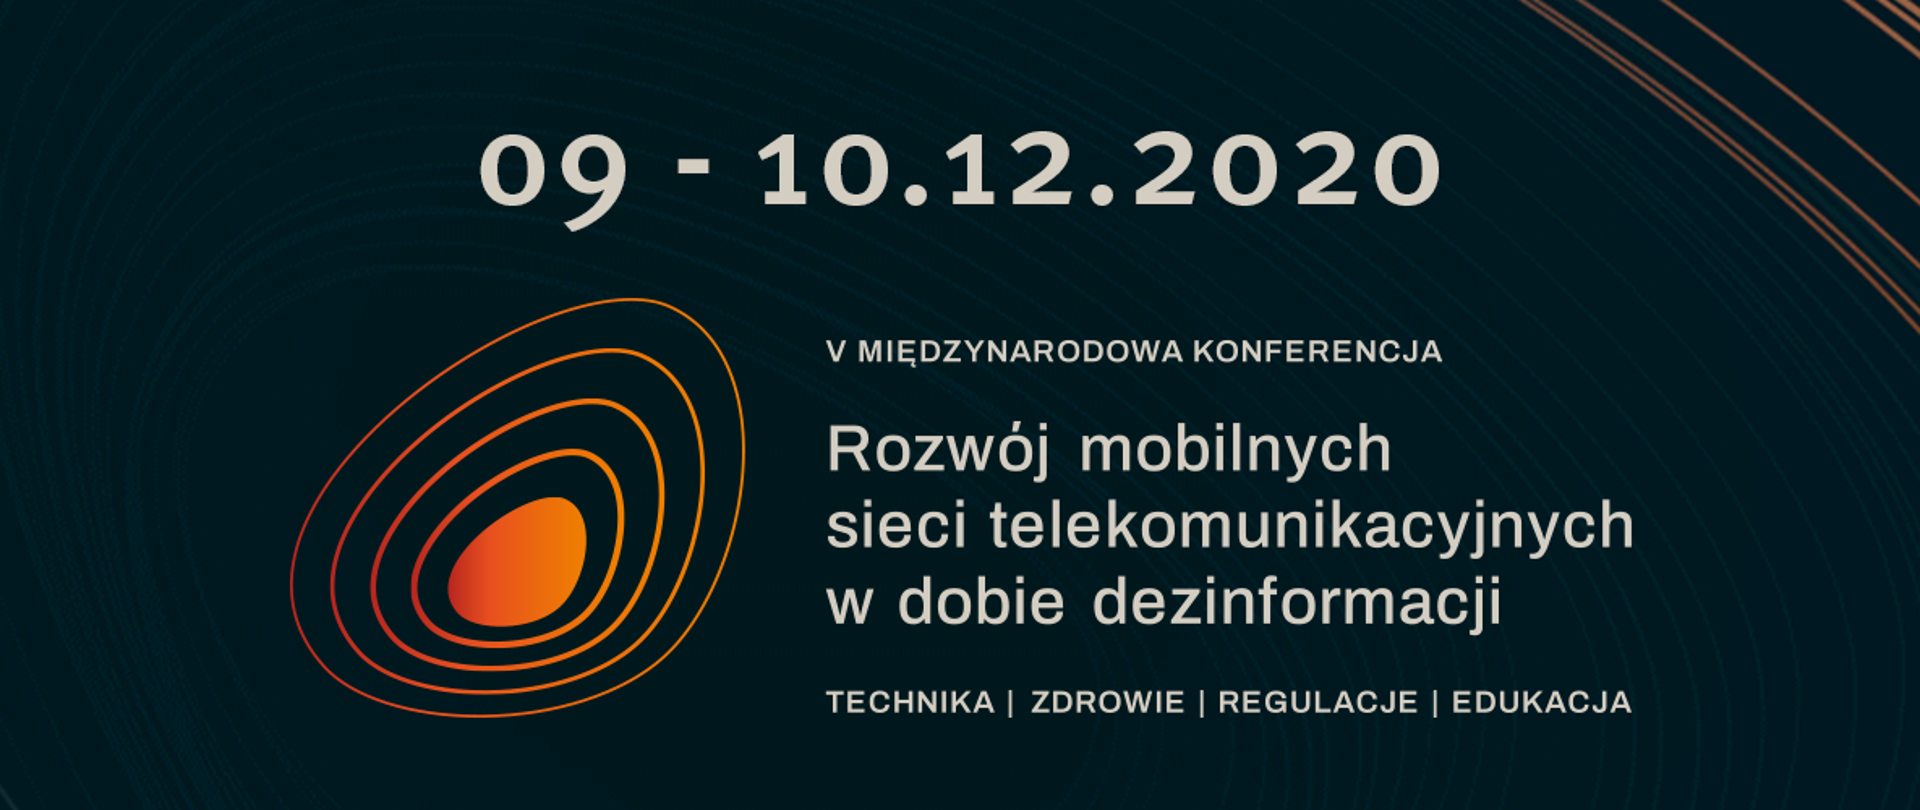 Logo konferencji, data wydarzenia i nazwa: rozwój mobilnych sieci telekomunikacyjnych w dobie dezinformacji – technika, zdrowie, regulacje i edukacja